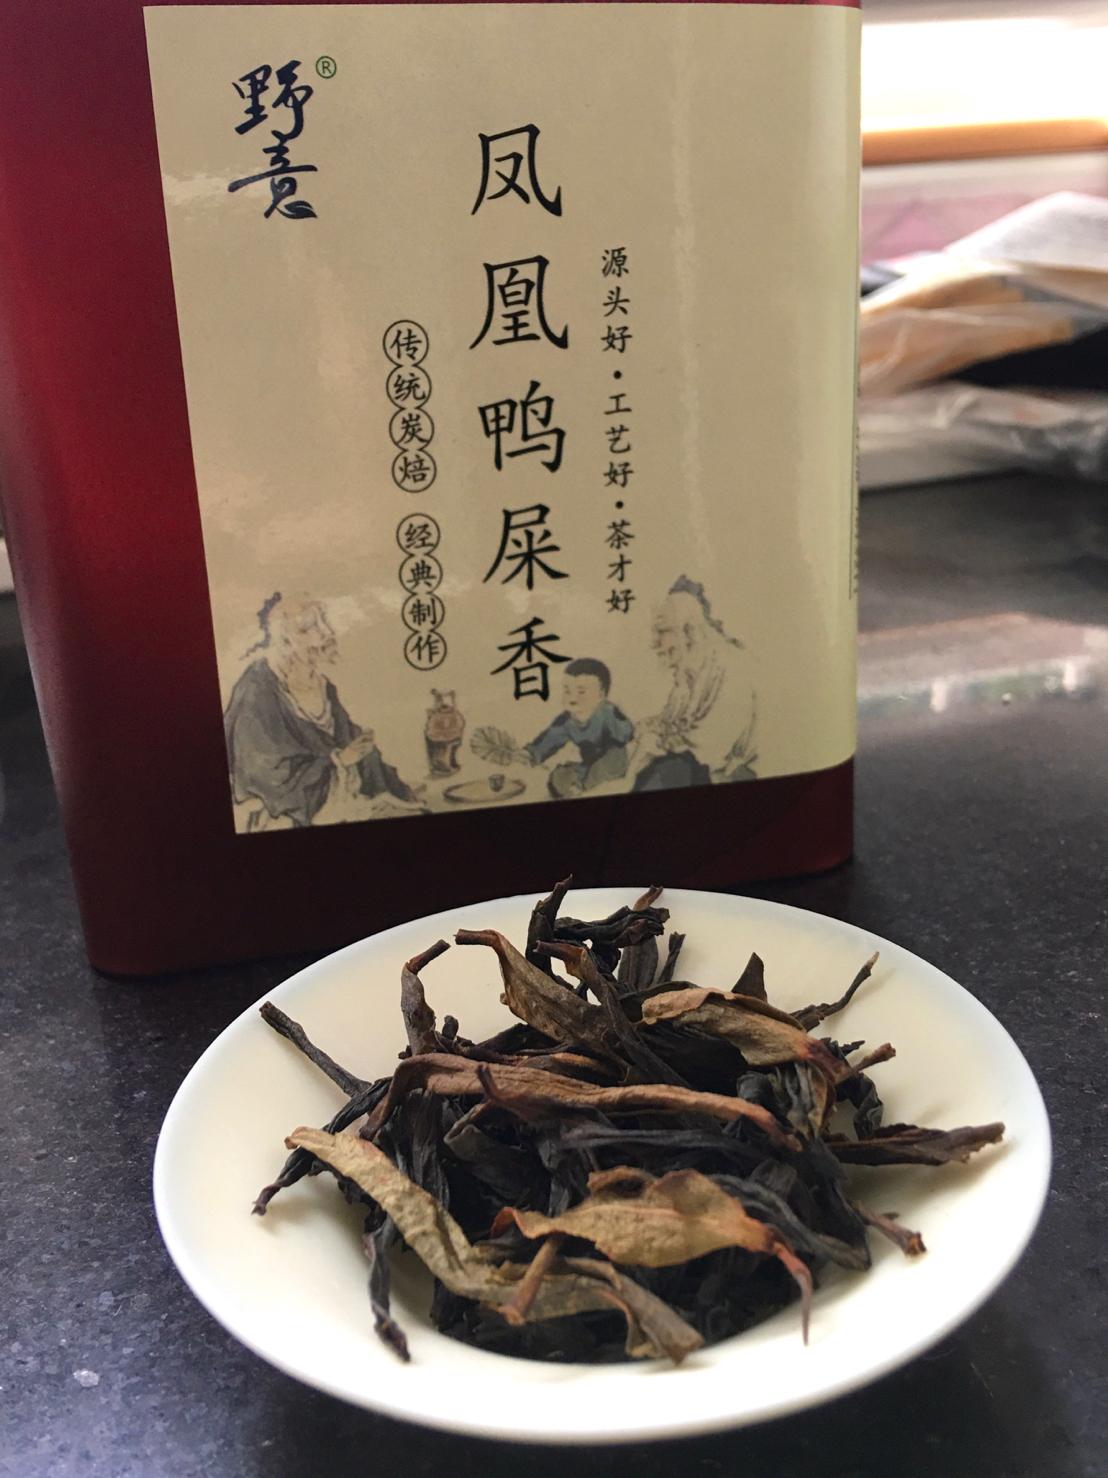 Feng Huang Ya Shi Xiang Tea. Phoenix Mountain “Duck Shit” Fragrance Tea